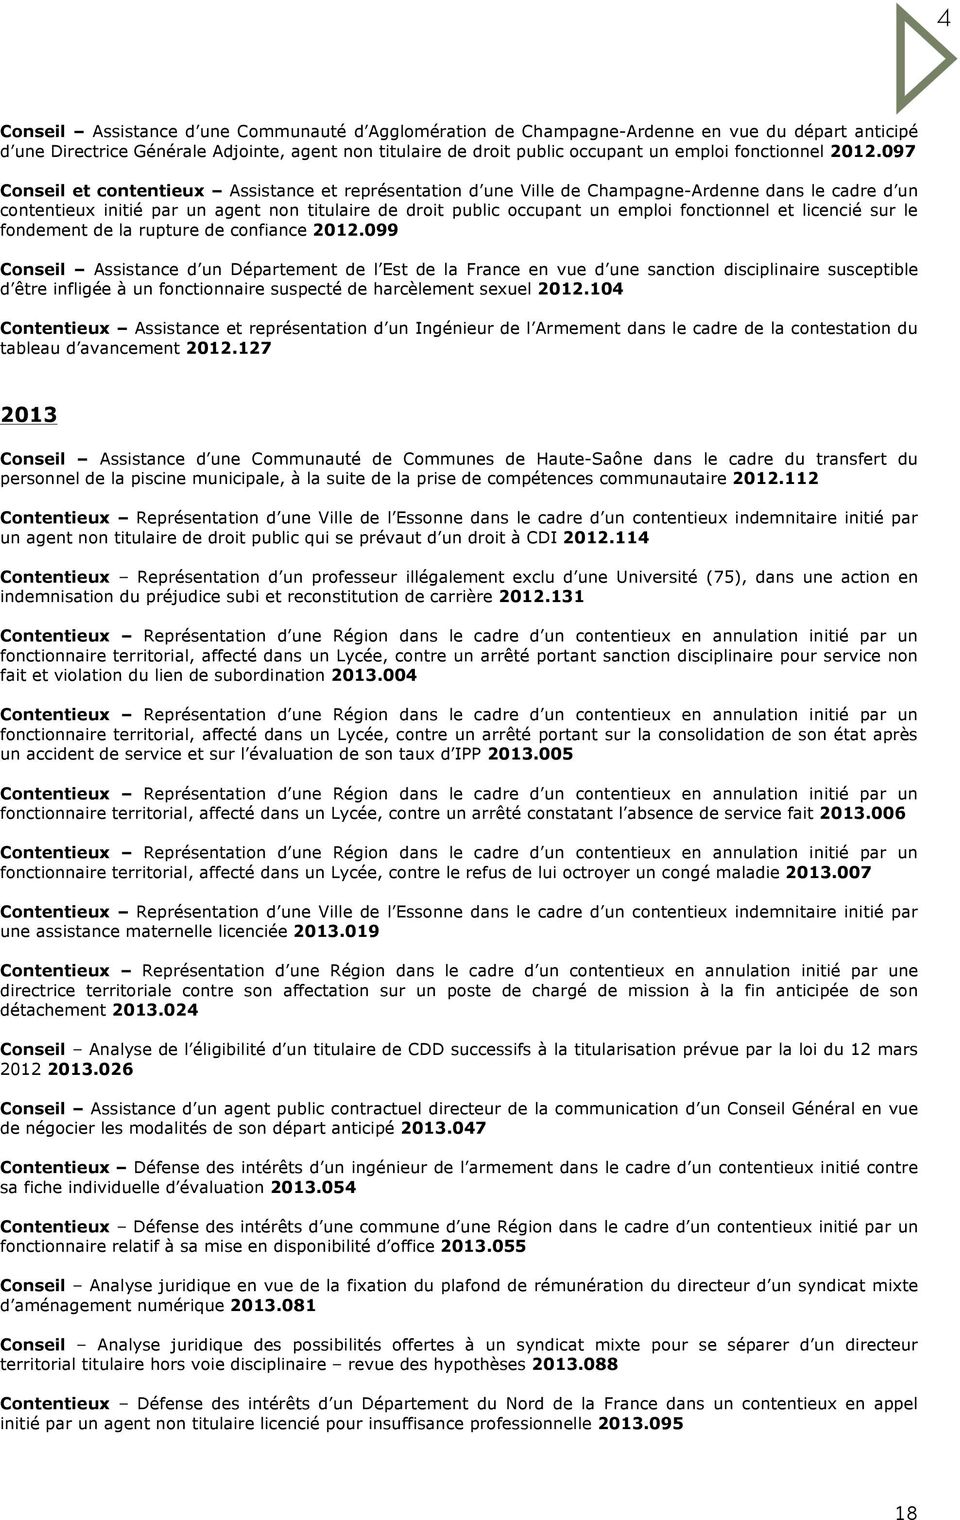 097 Conseil et contentieux Assistance et représentation d une Ville de Champagne-Ardenne dans le cadre d un contentieux initié par un agent non titulaire de droit public occupant un emploi